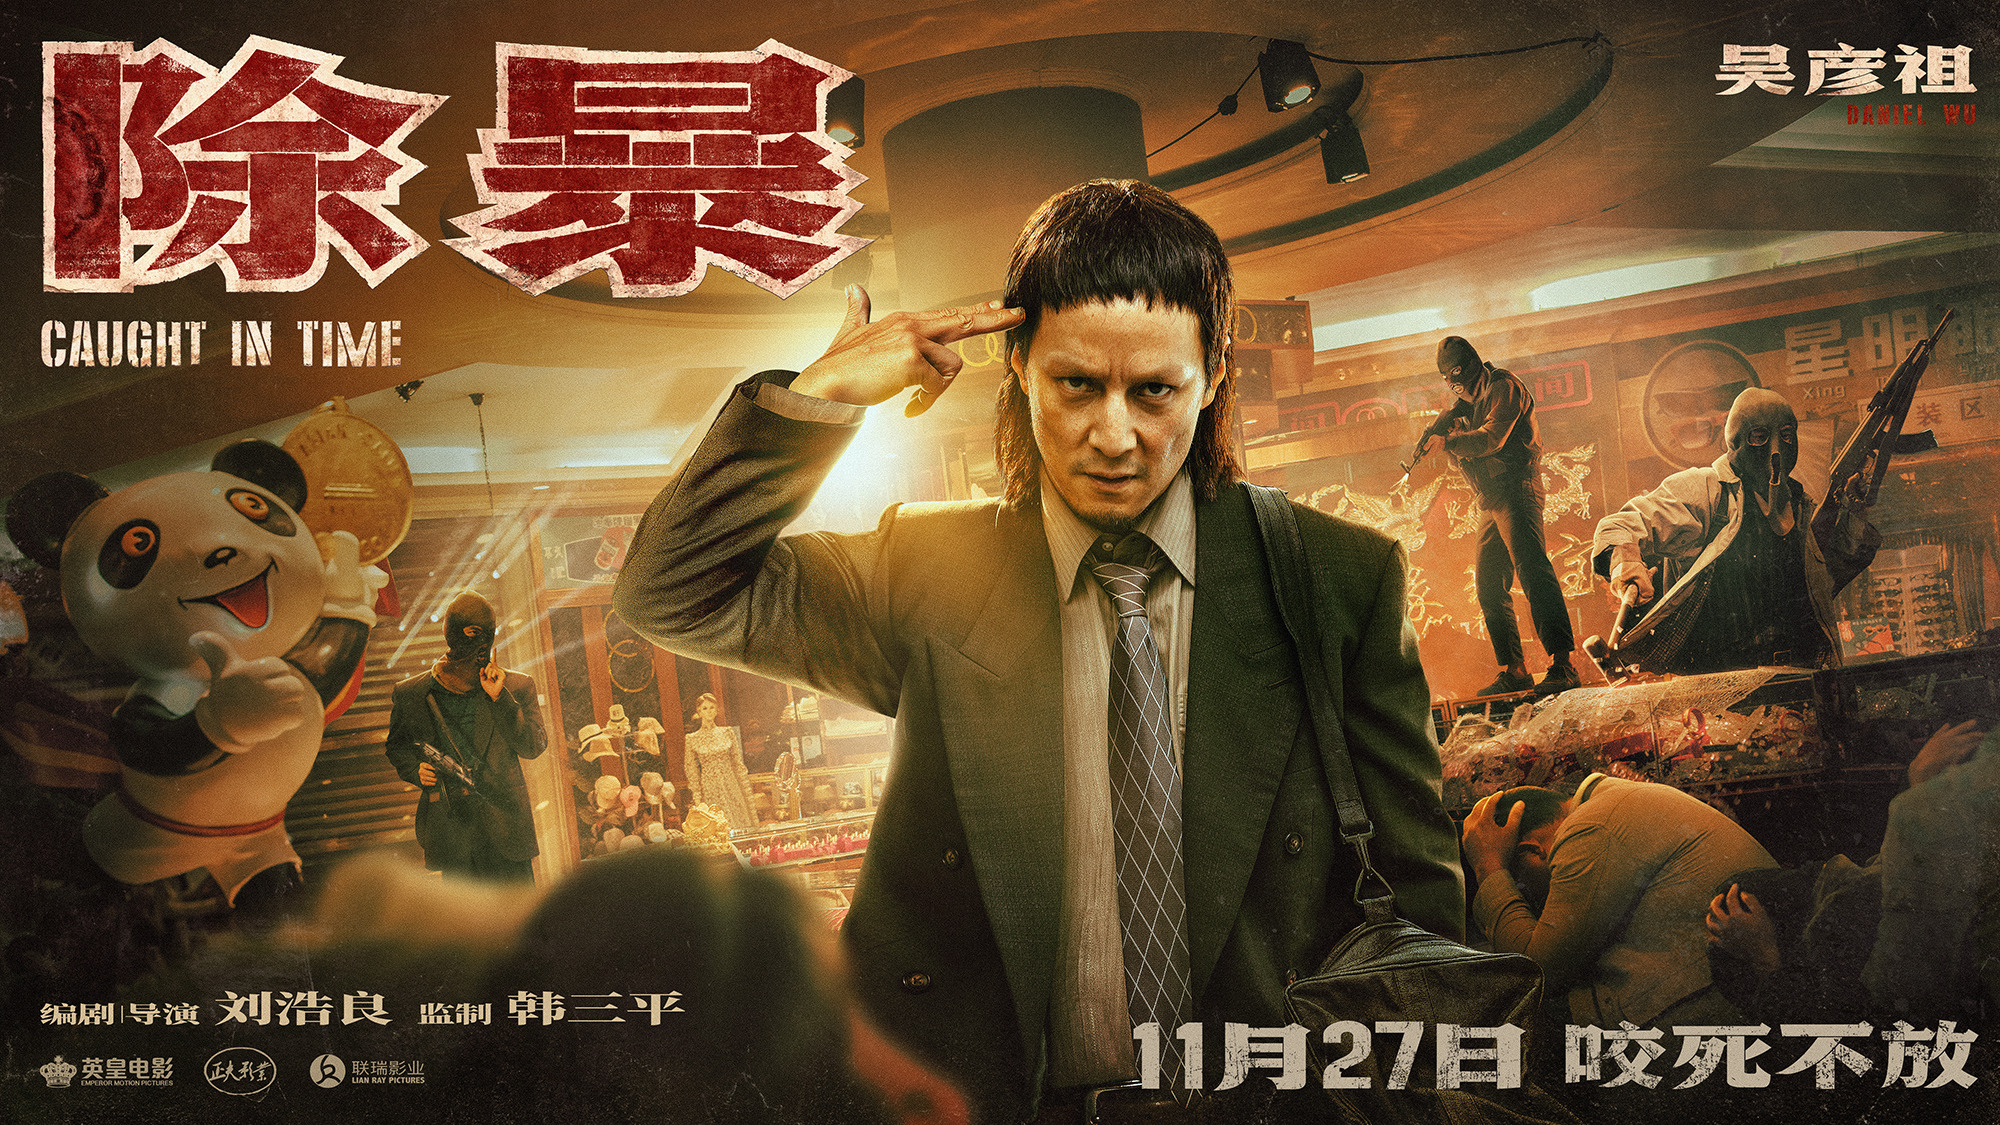 Mega Sized Movie Poster Image for Chu bao (#4 of 8)